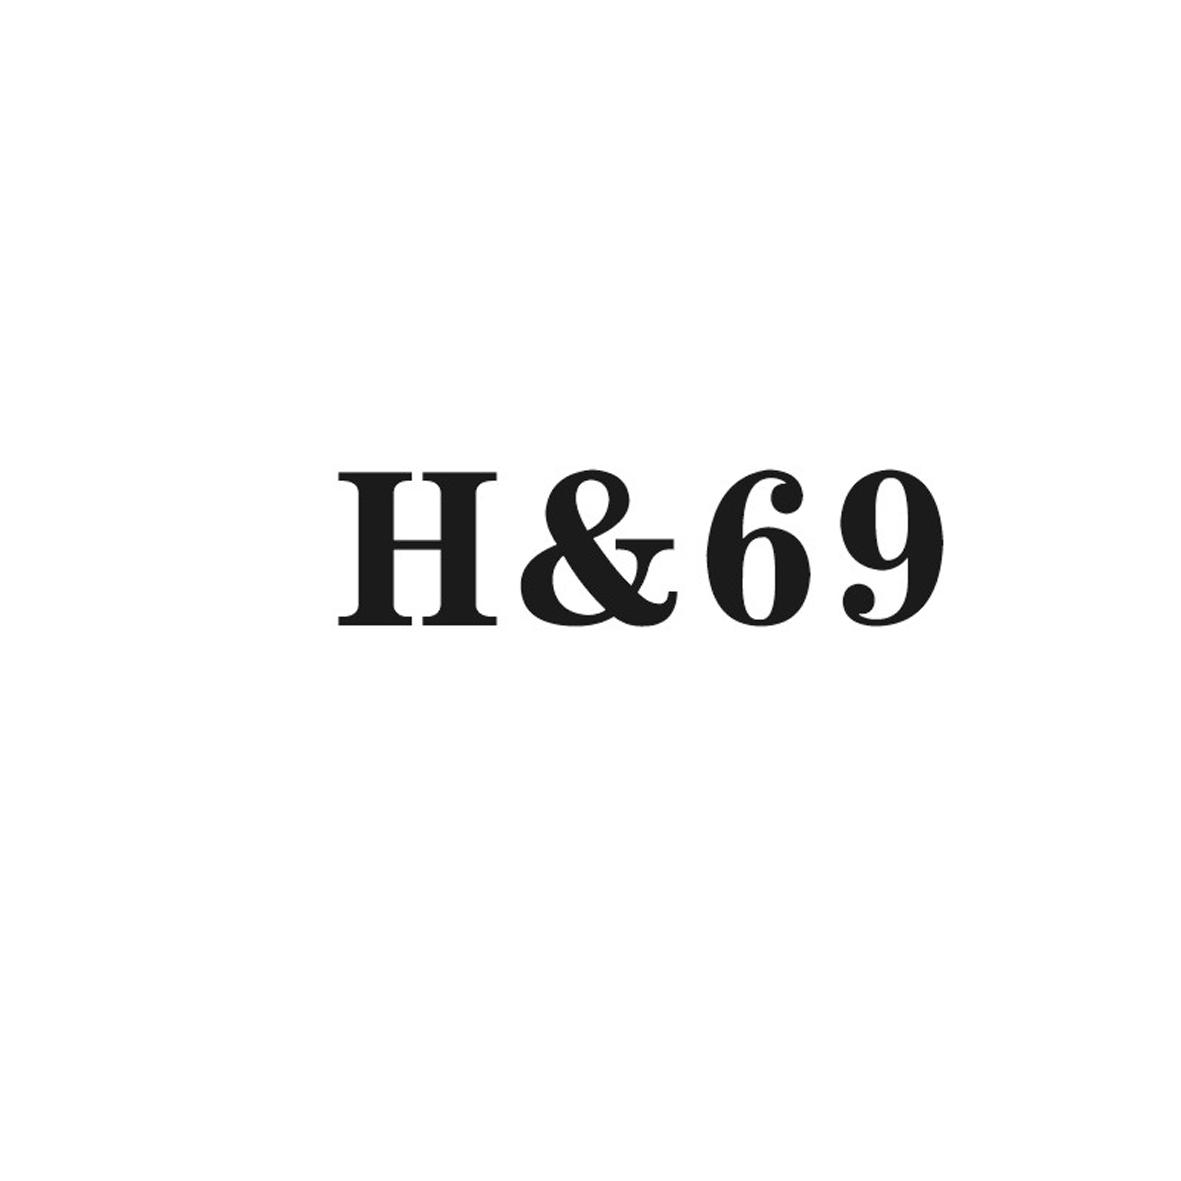 H&69商标转让